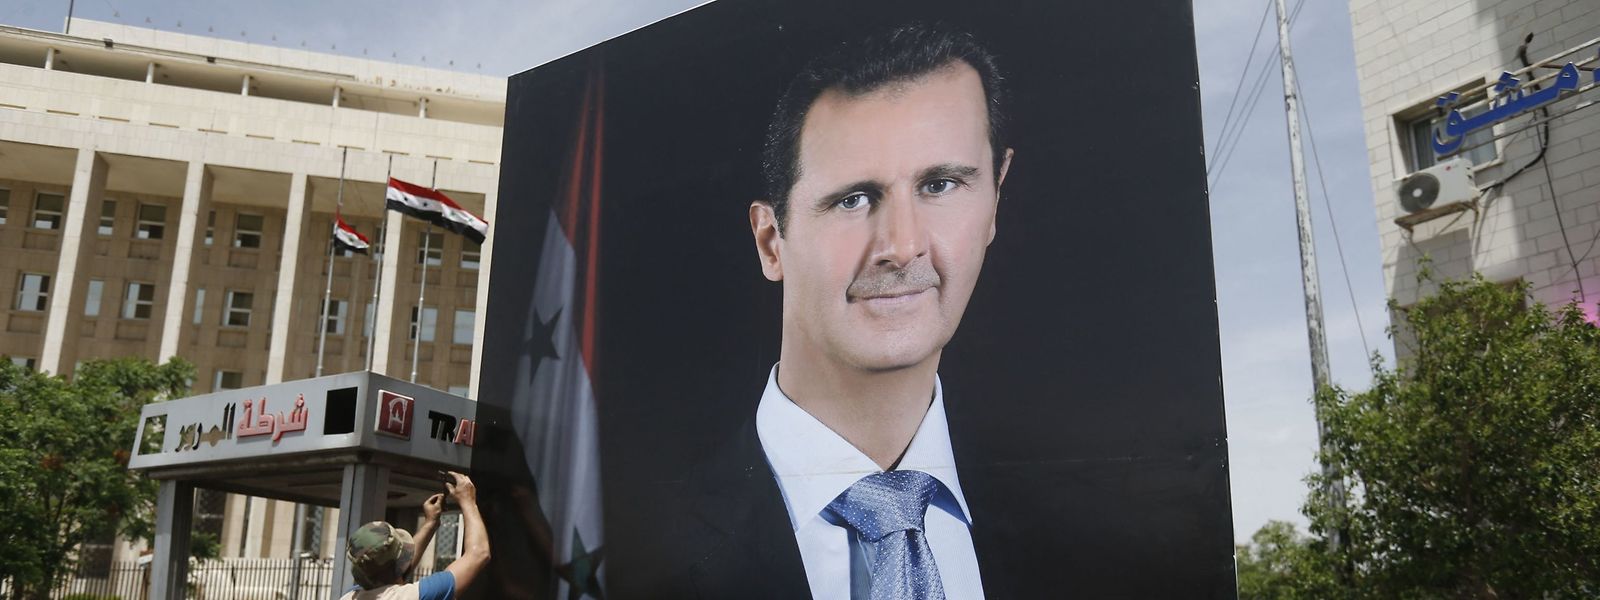 Syriens Diktator Baschar al-Assad genießt im arabischen Raum wieder hohes Ansehen.